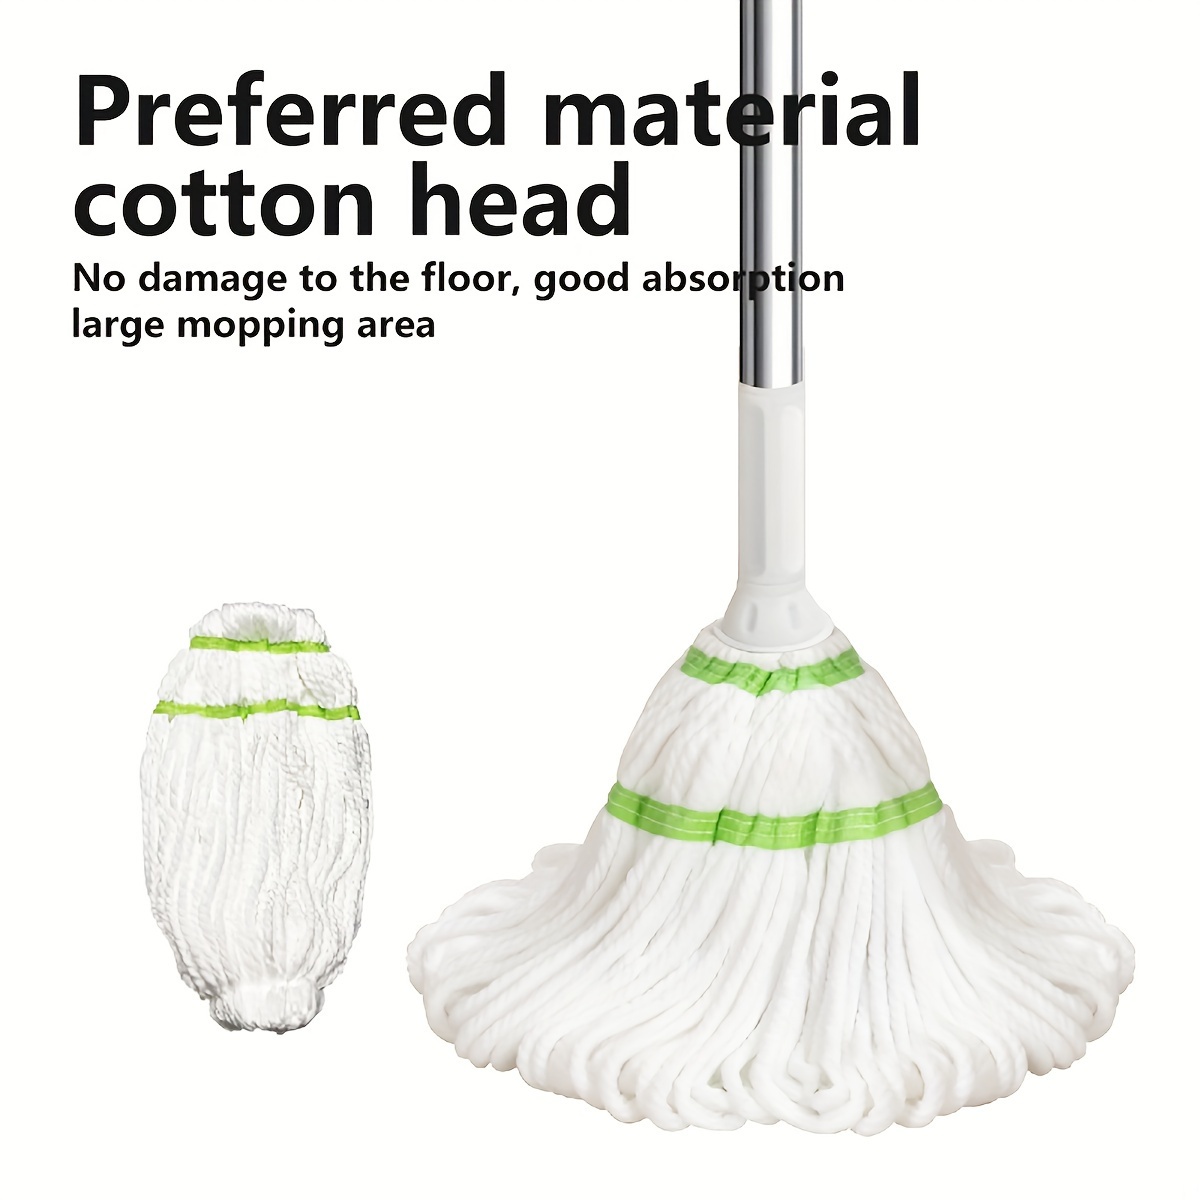 Mopas para limpieza de suelos con una botella de spray recargable y 2  almohadillas de microfibra lavables para uso doméstico o comercial, mopa  plana